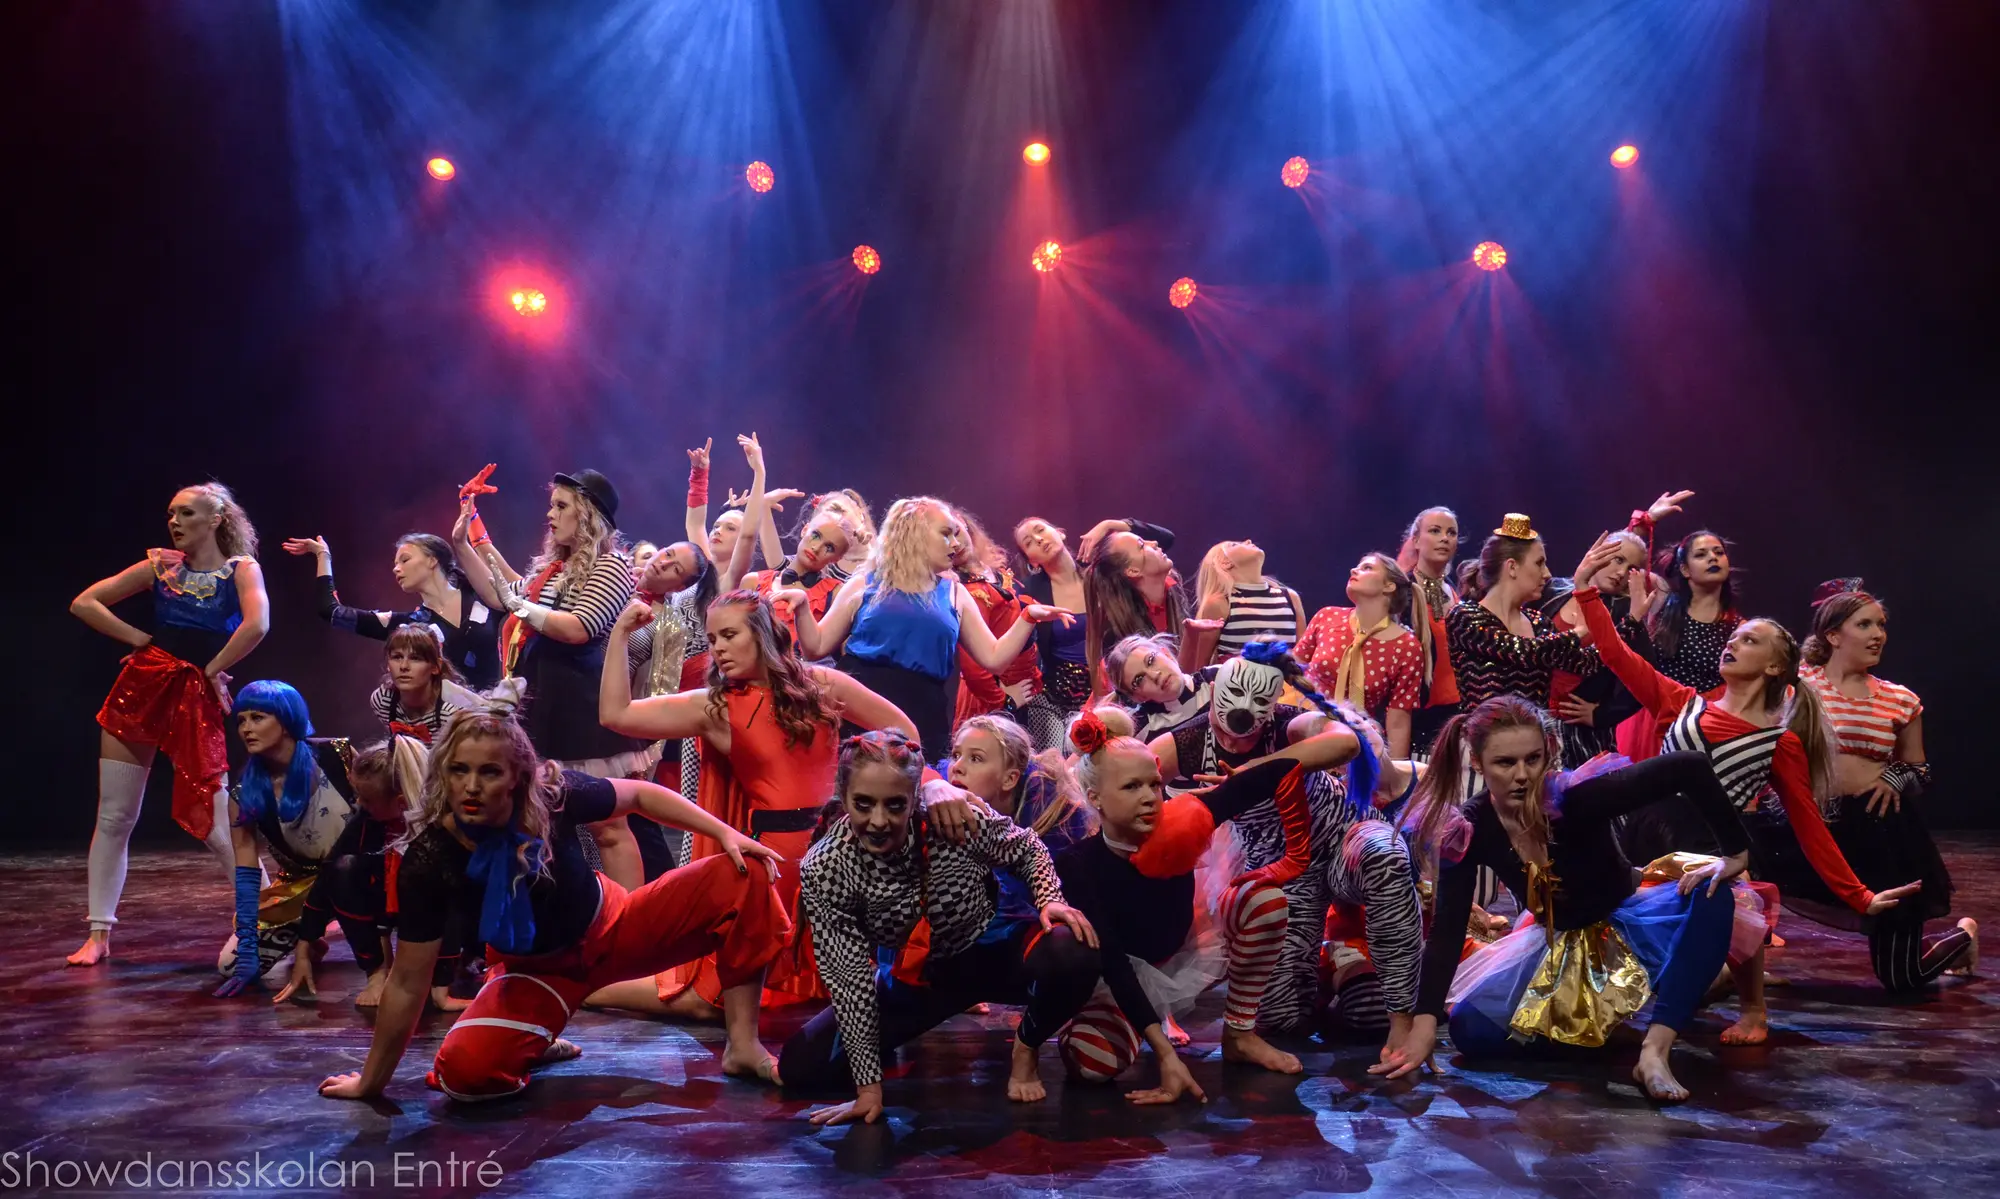 Showdans - Dansskolan Entré Örebro